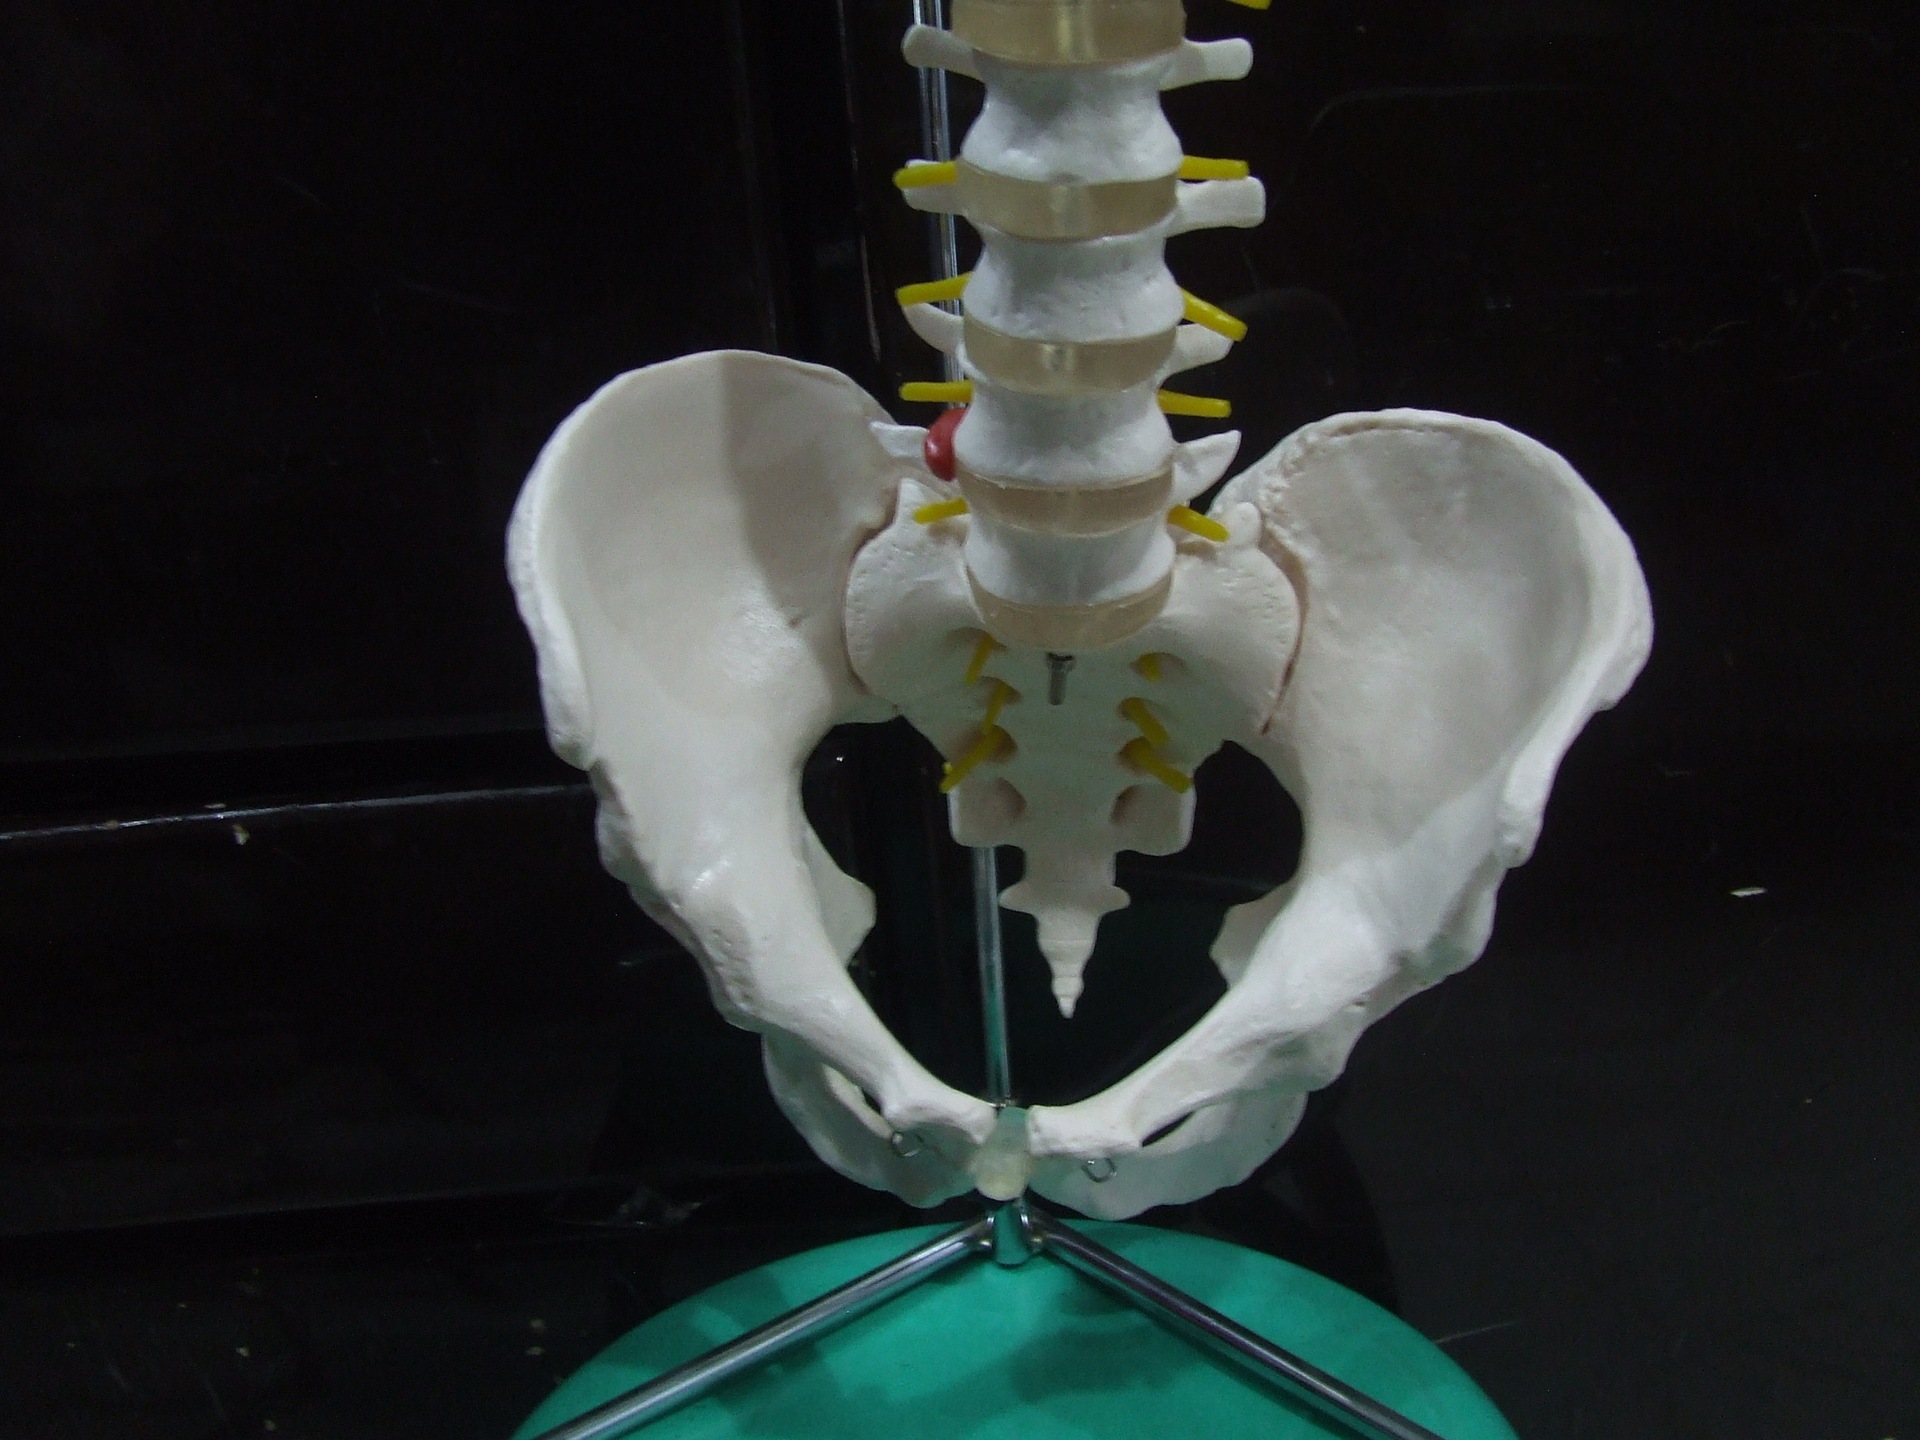 自然大脊椎,腰椎,颈椎,头骨,盆骨,尾骨,神经模型1:1教具